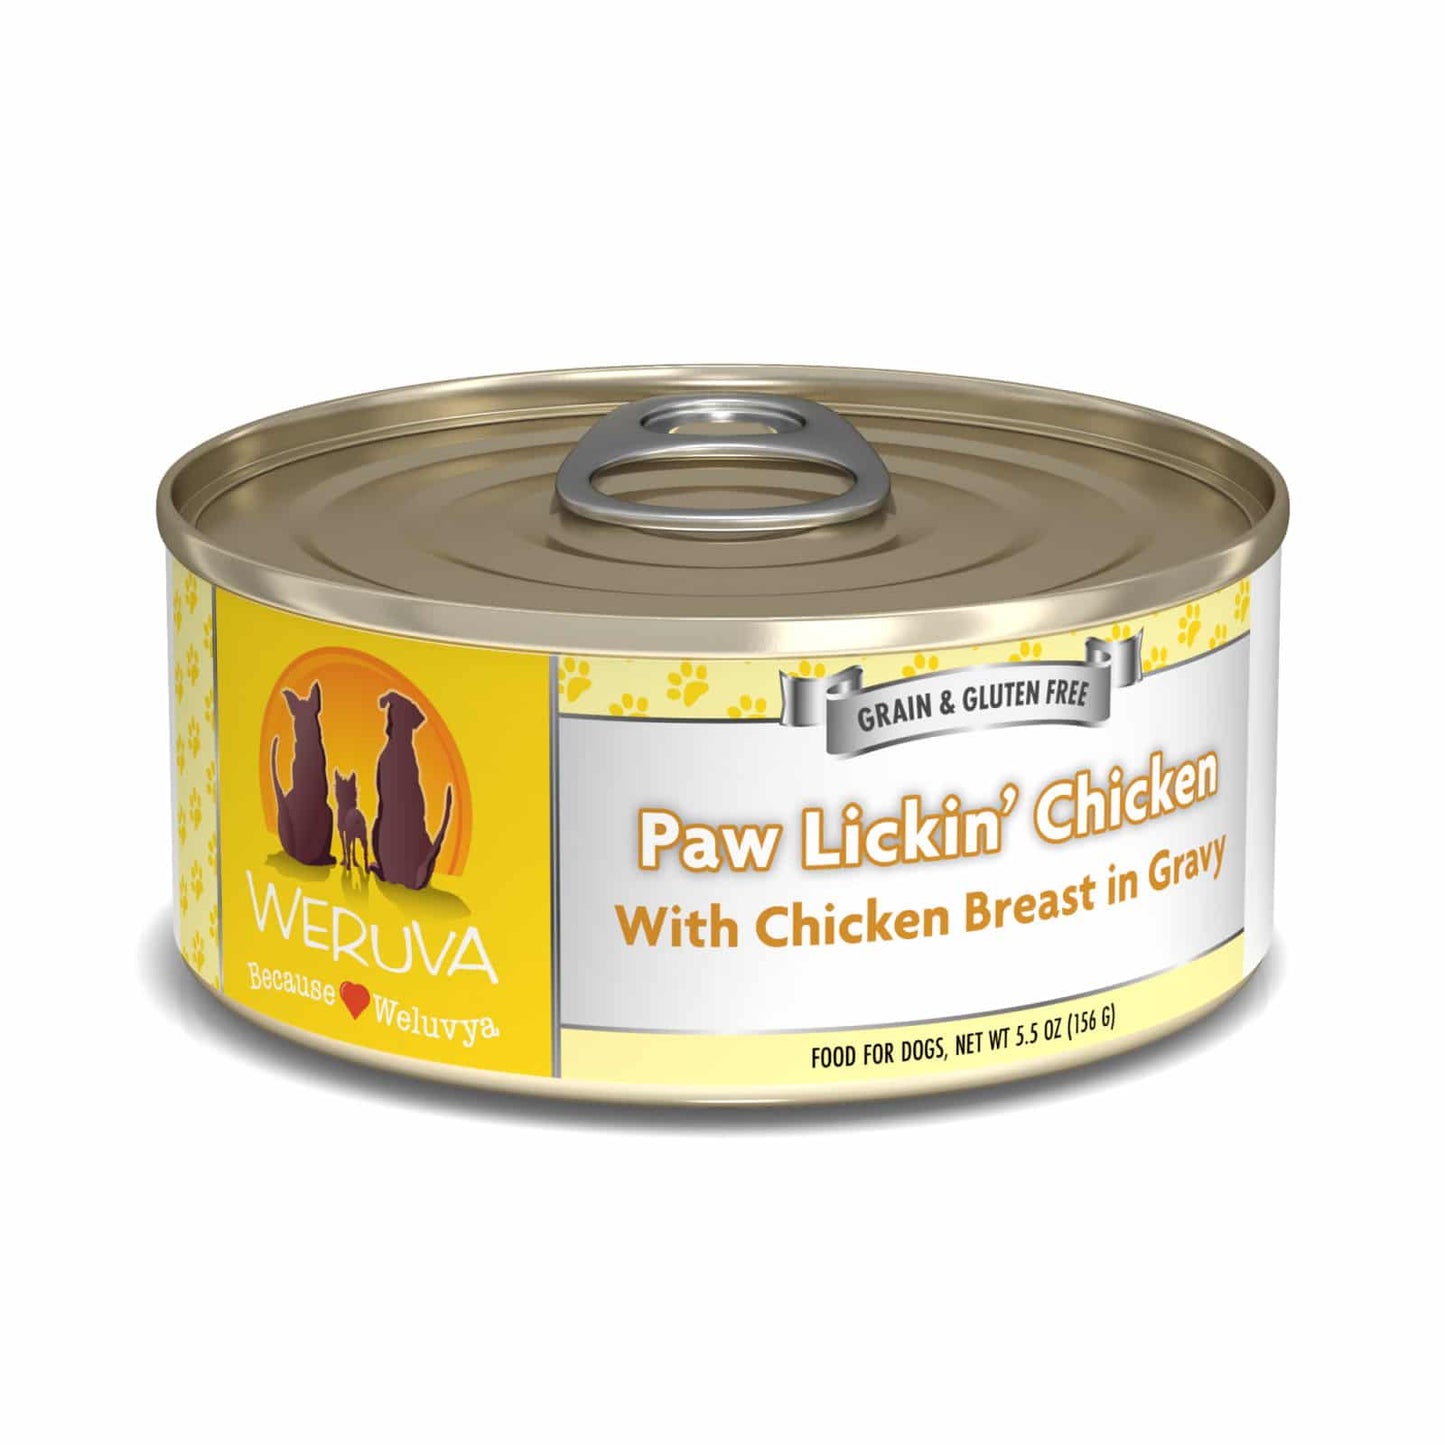 Weruva Paw Lickin' Chicken with Chicken Breast in Gravy, Wet Dog Food